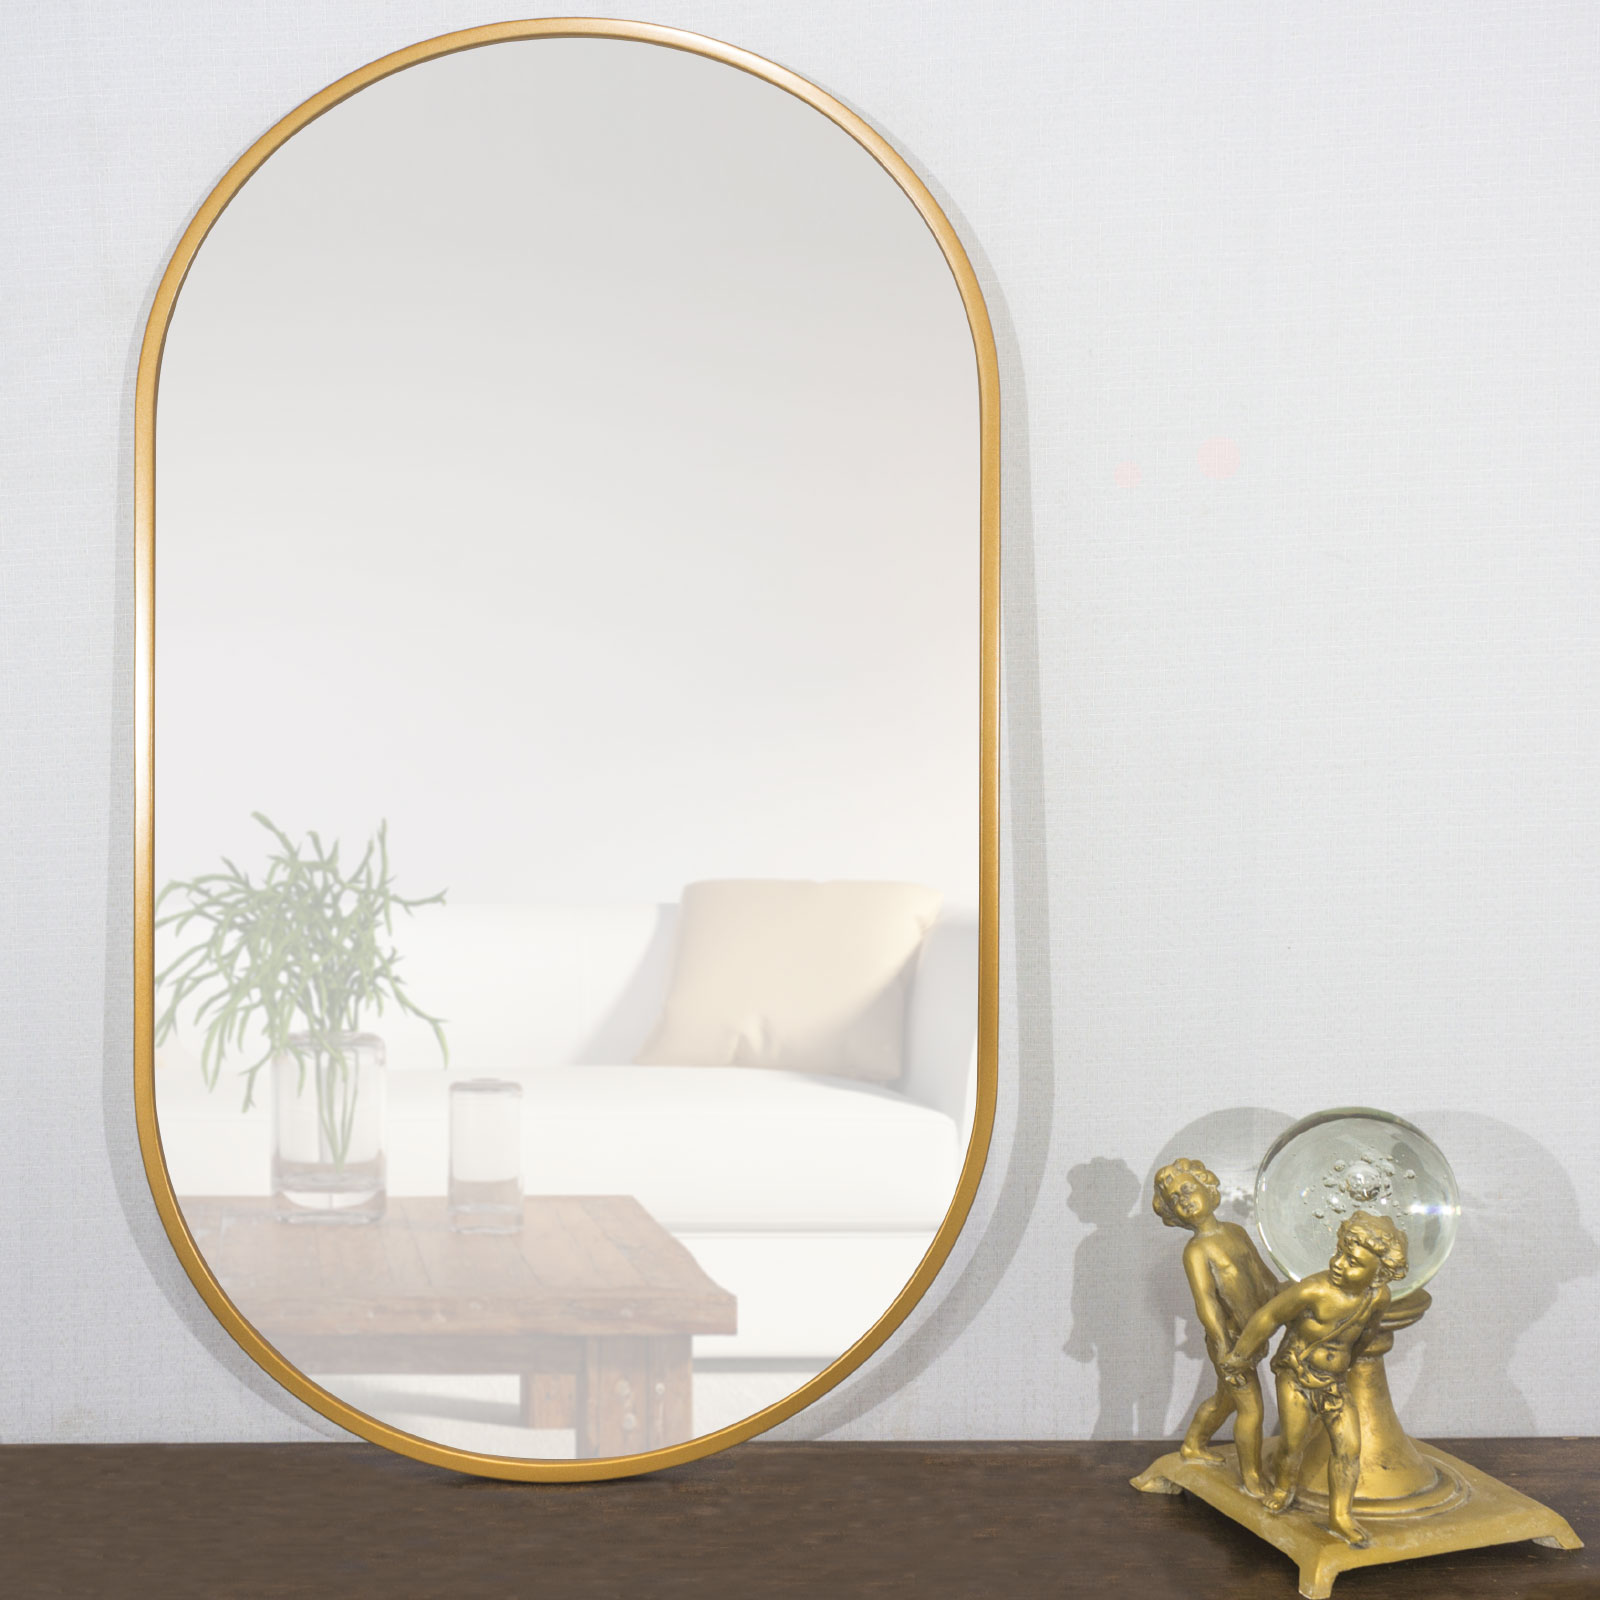 Moldura Arredondada MDF Laqueado Dourada Brilho Para Espelhos Vrias Medidas